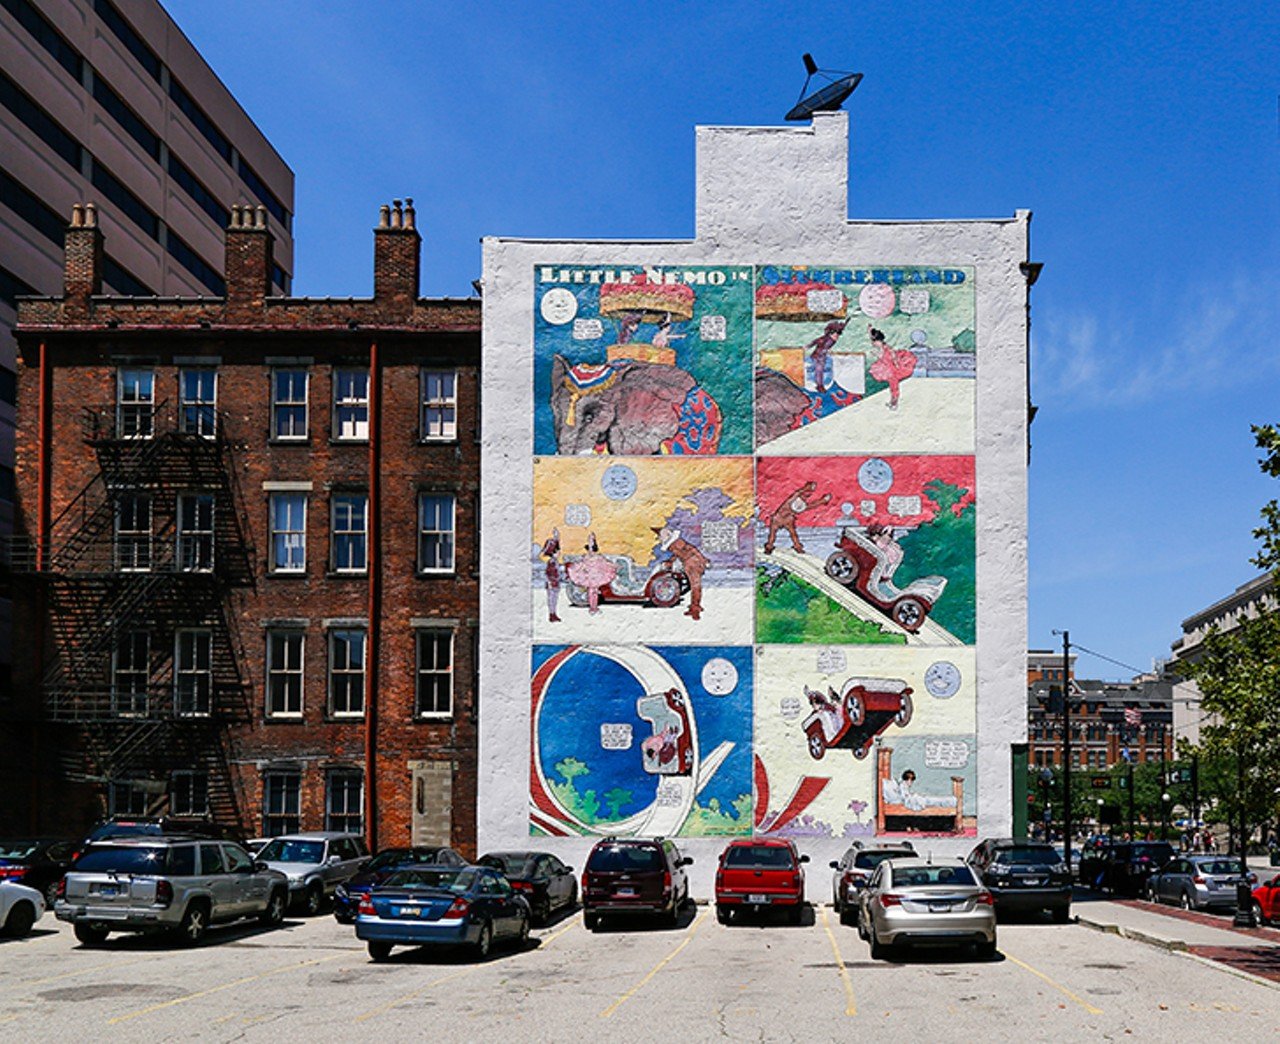 Little Nemo in Slumberland
917 Main St., Downtown
Mural: ArtWorks | Designer: Winsor McCay
Photo: Hailey Bollinger